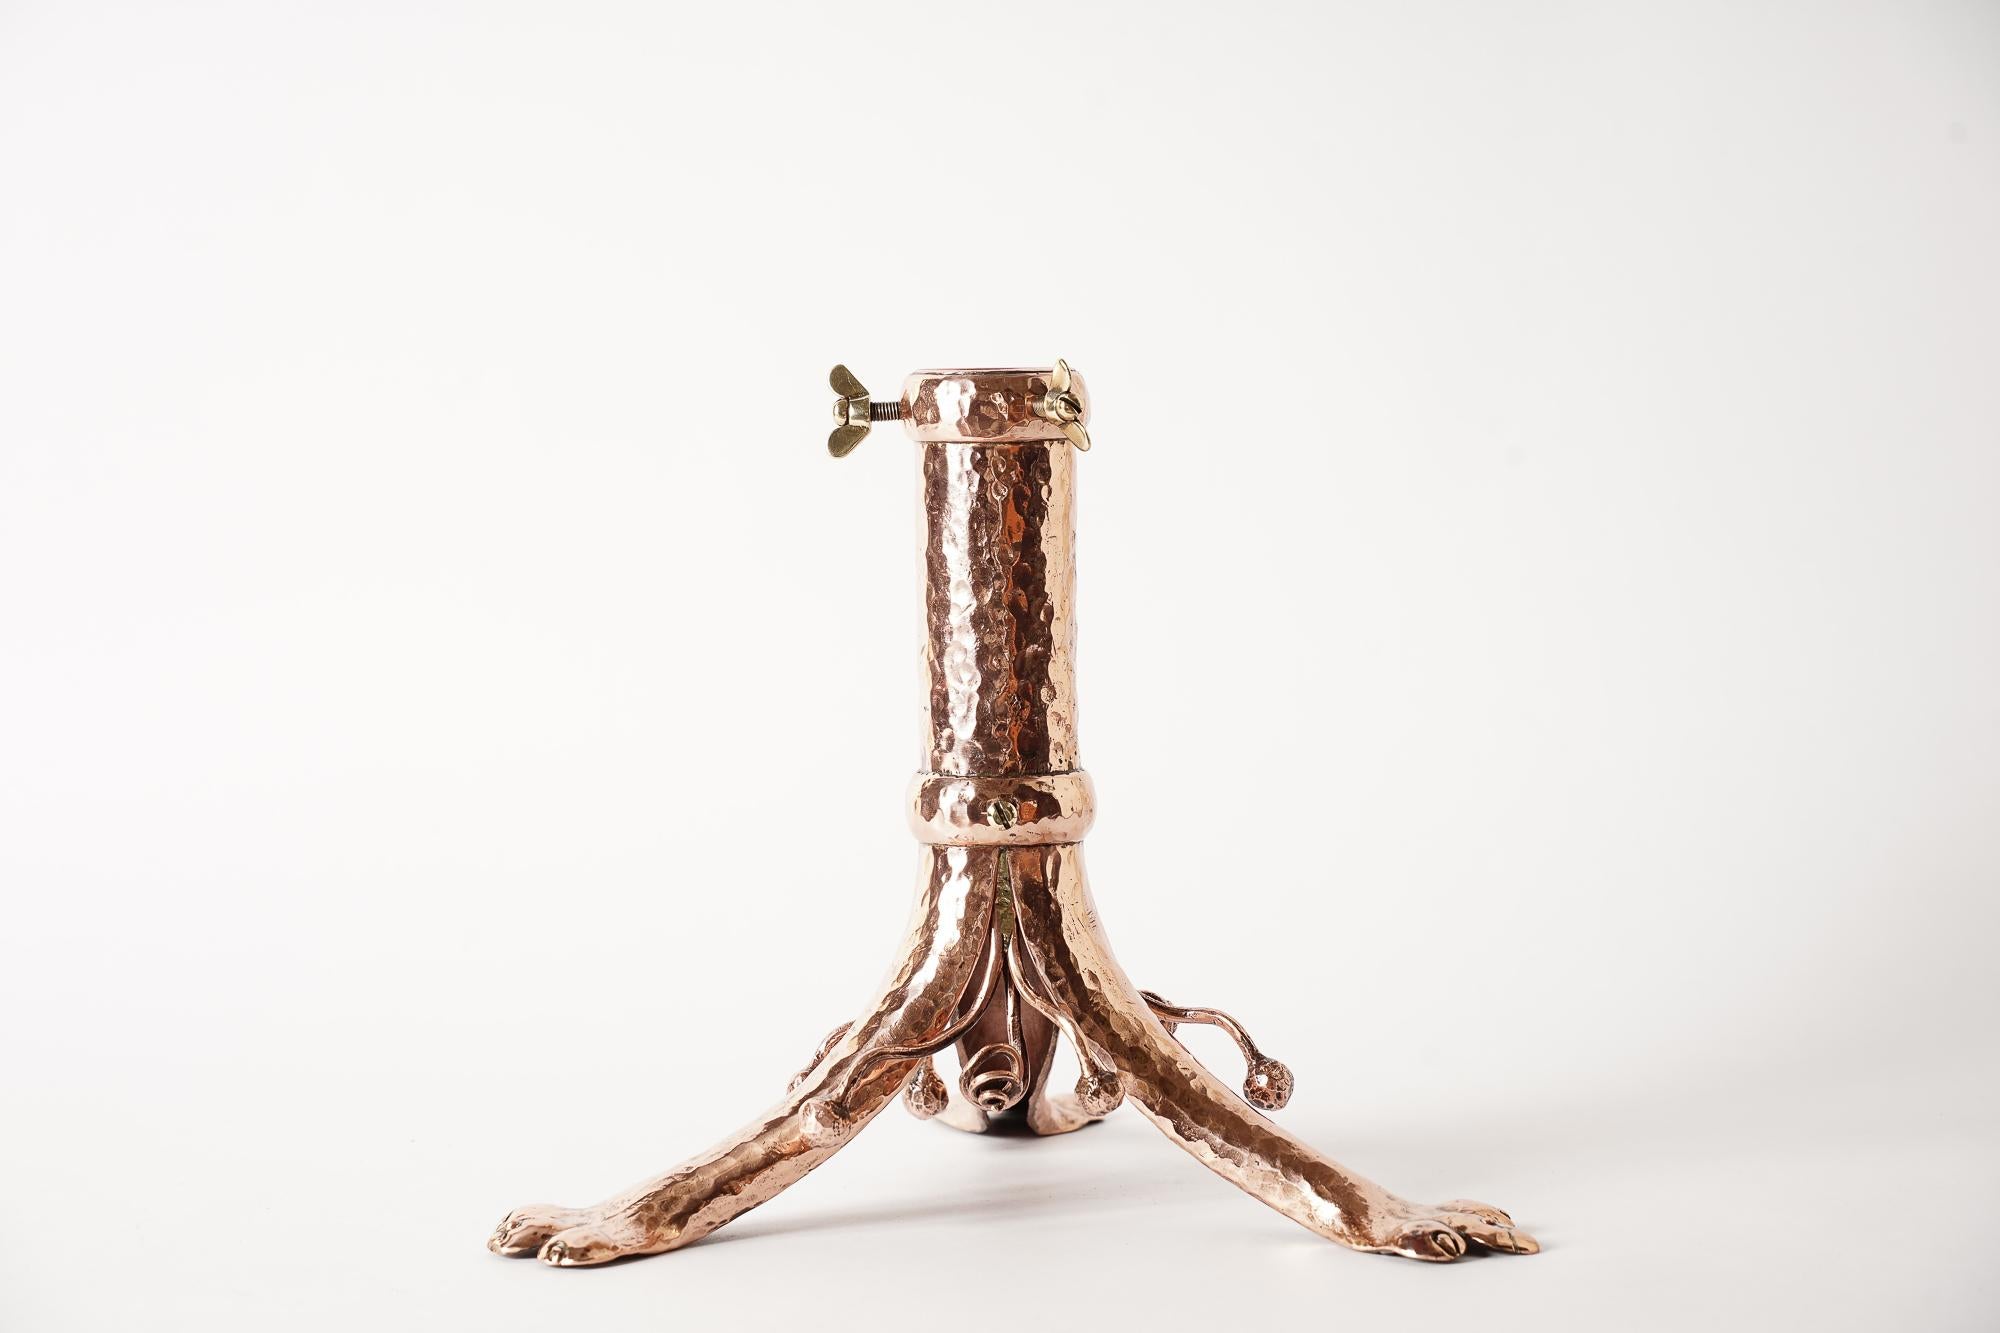 Jugendstil hammered copper christmas tree holder vienna around 1905
Polished and stove enameled.